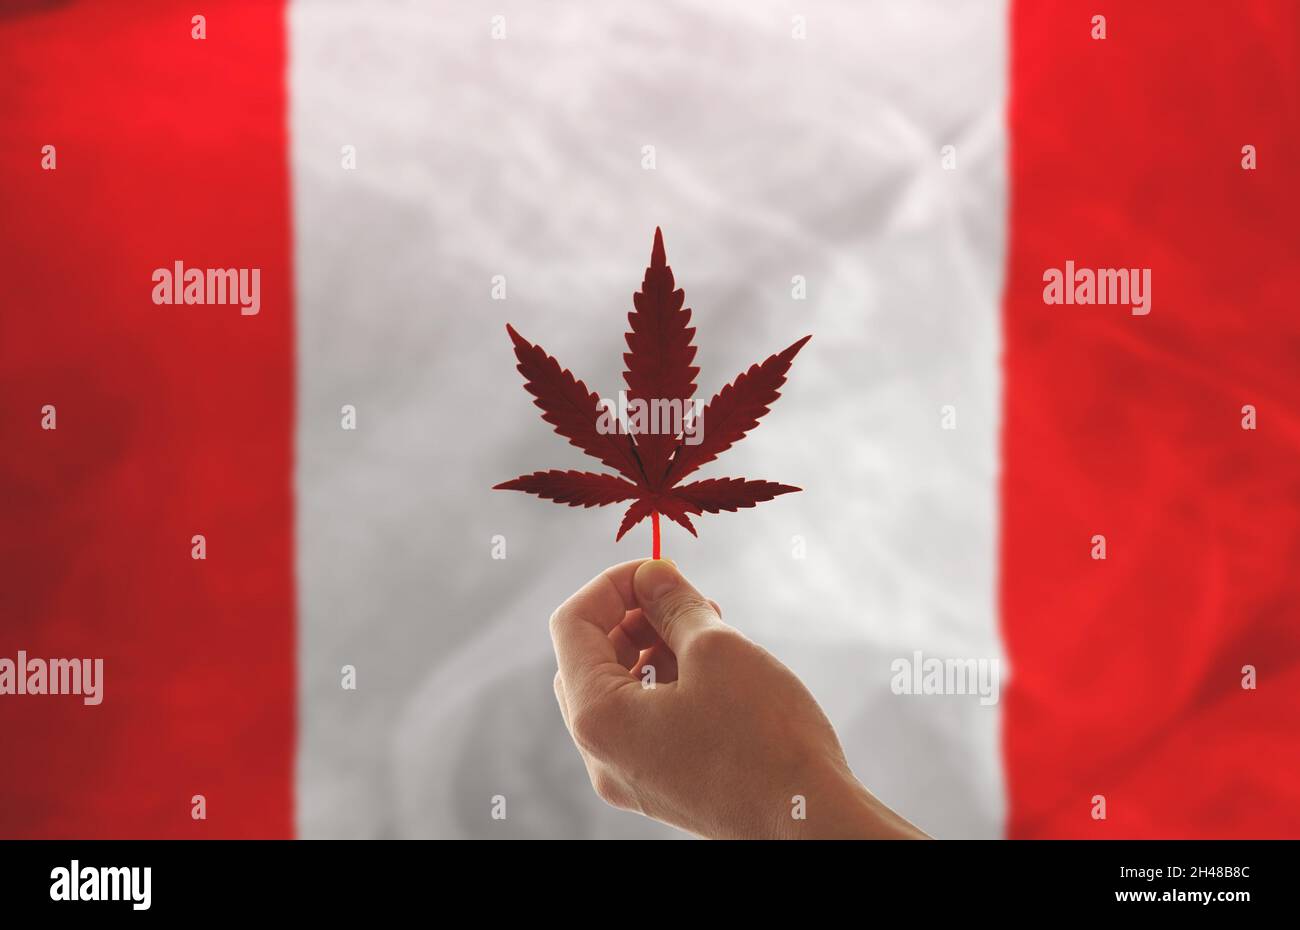 Bandiera del Canada con una foglia di marijuana. La mano di una donna tiene una foglia di cannabis sullo sfondo della bandiera canadese. Concetto per lo sviluppo Foto Stock